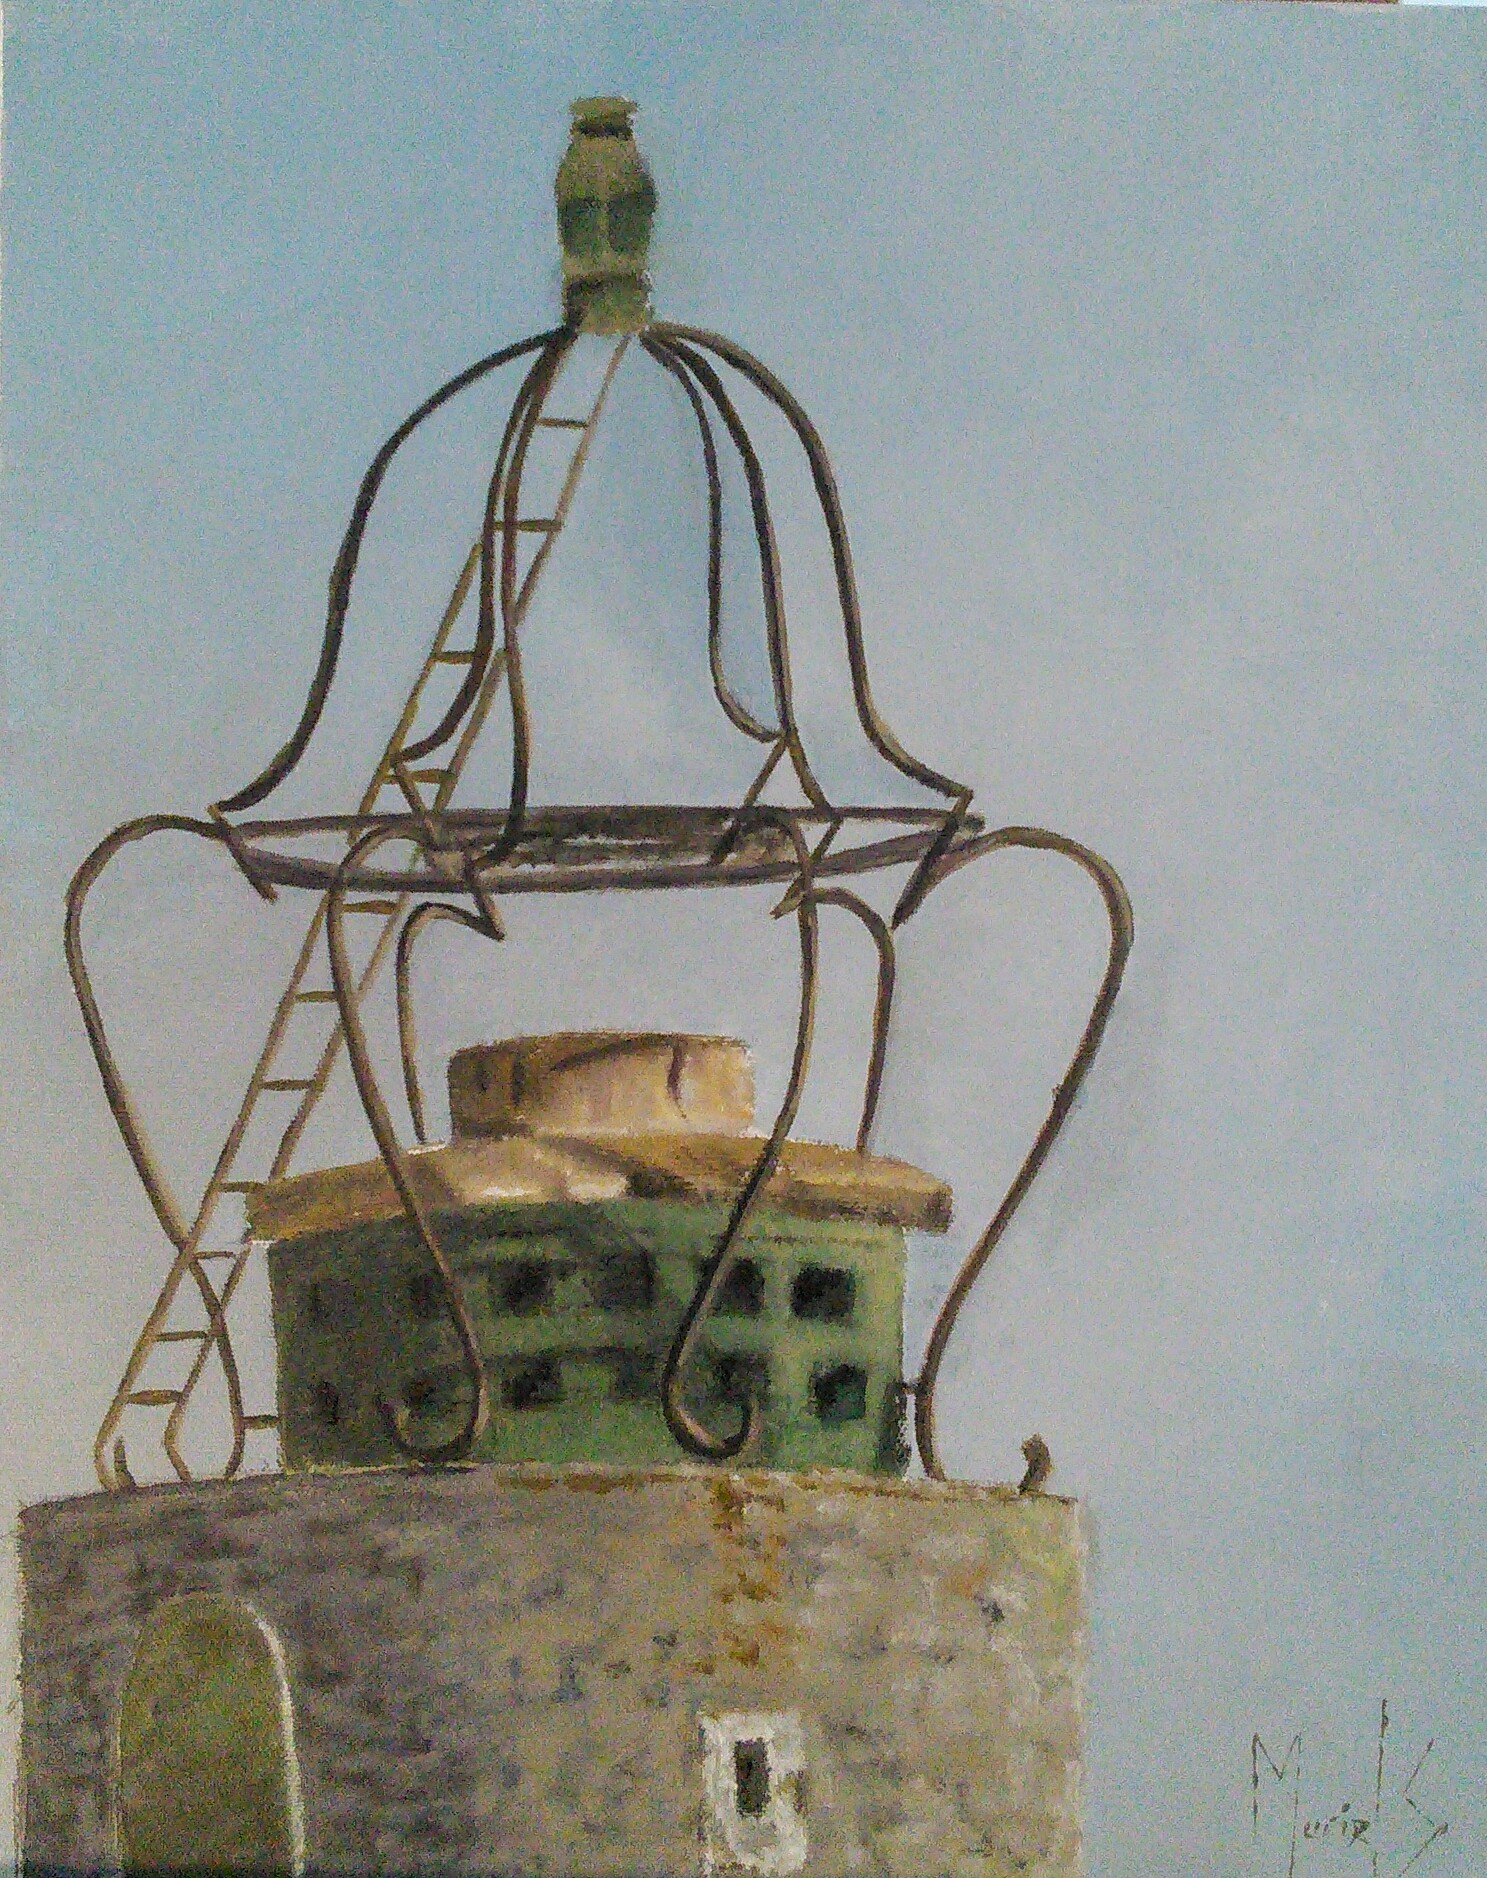 Détail, Le phare de Collioure, acrylique sur toile, 33X41, mai 2020